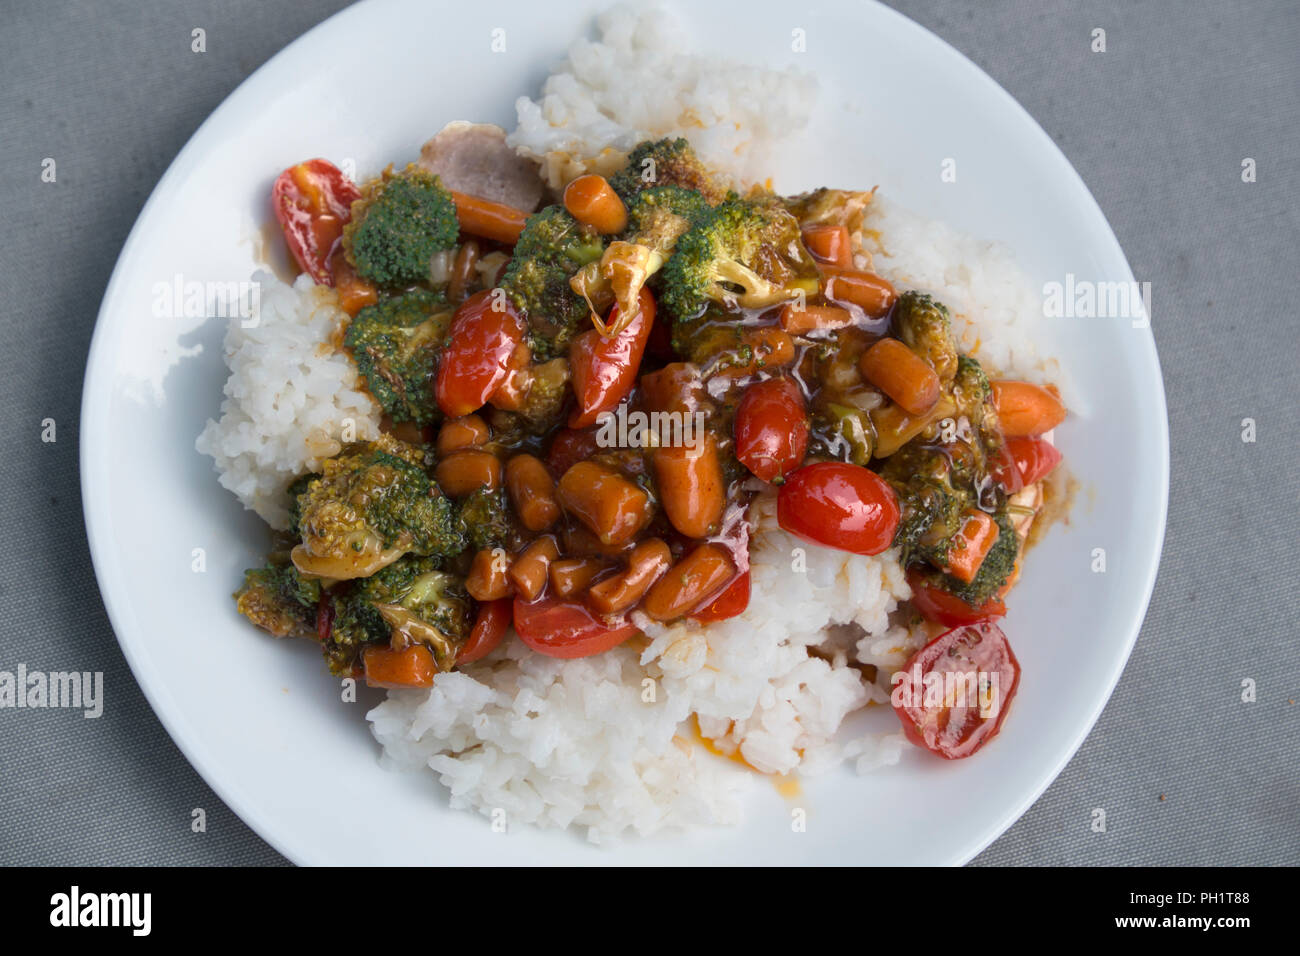 Sauté de légumes avec brocoli, carottes et tomates raisins servi sur blanc, riz à grains longs. Banque D'Images